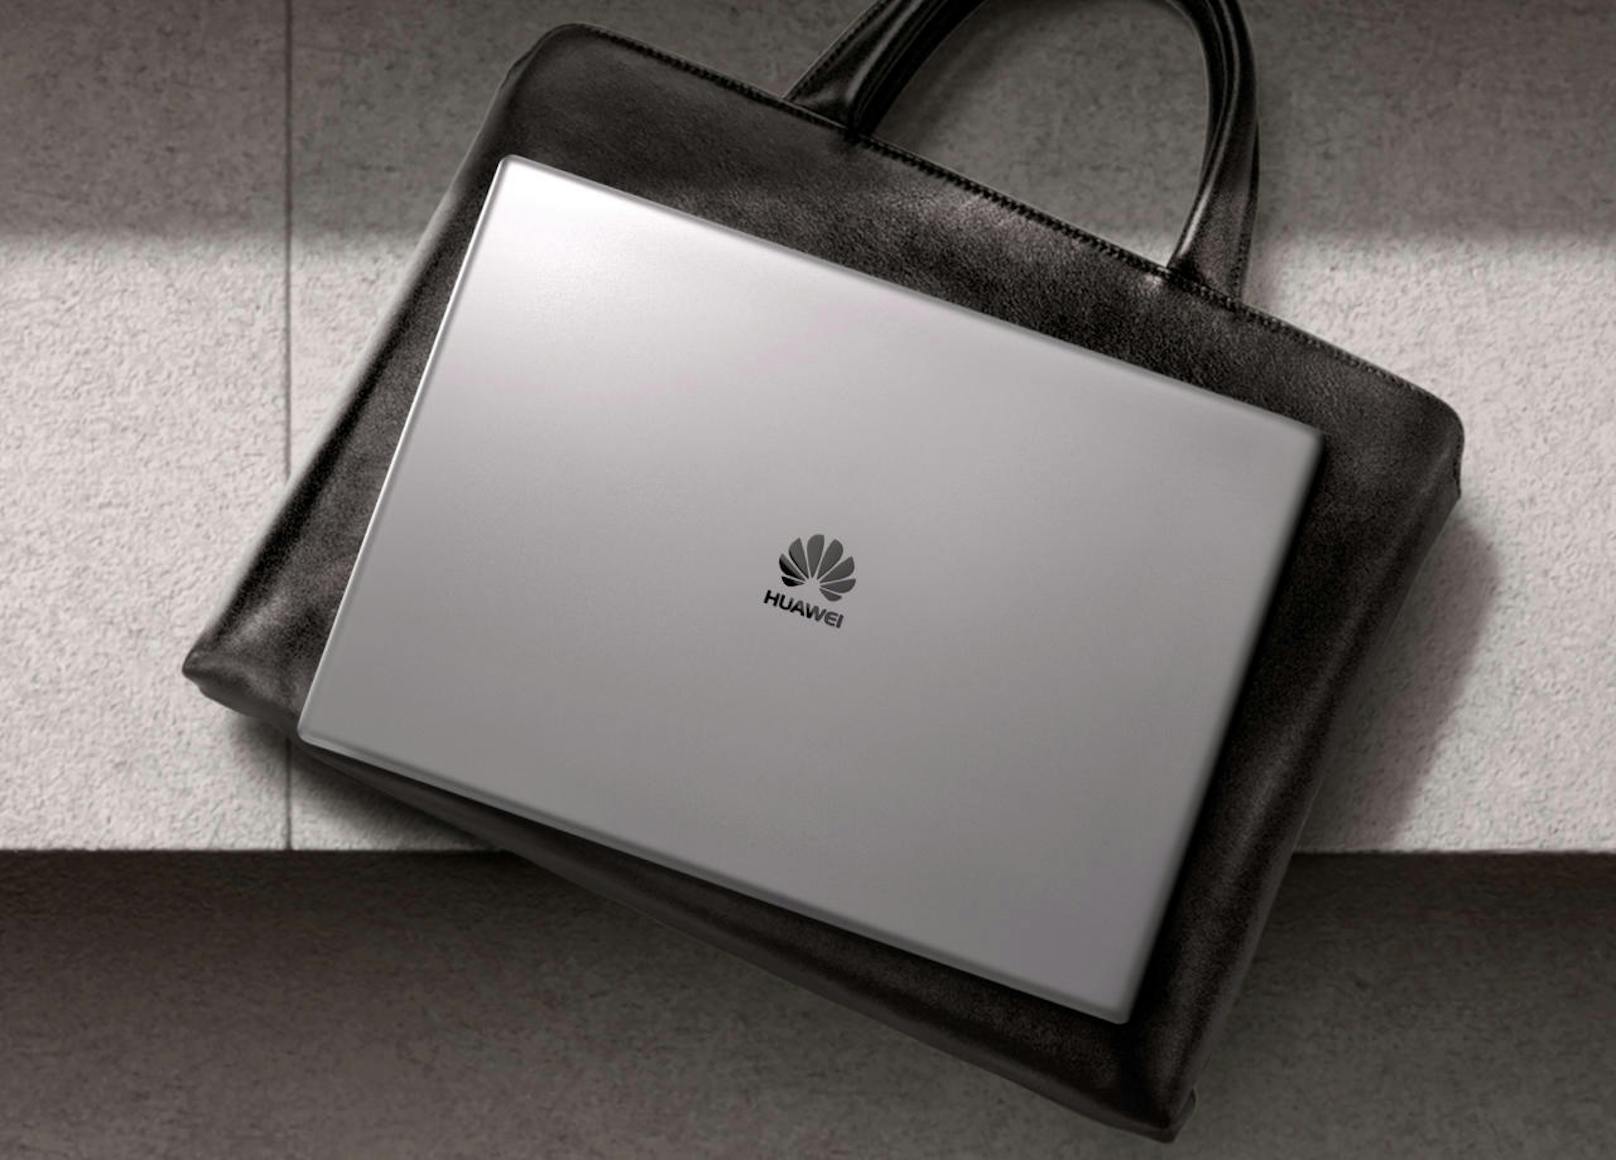 Mit dem MateBook X Pro ist Huawei ein Glanzstück gelungen. Es stellt das große Vorbild MacBook in die Tasche und verweist andere Laptops in dieser Preisklasse deutlich in die Schranken.